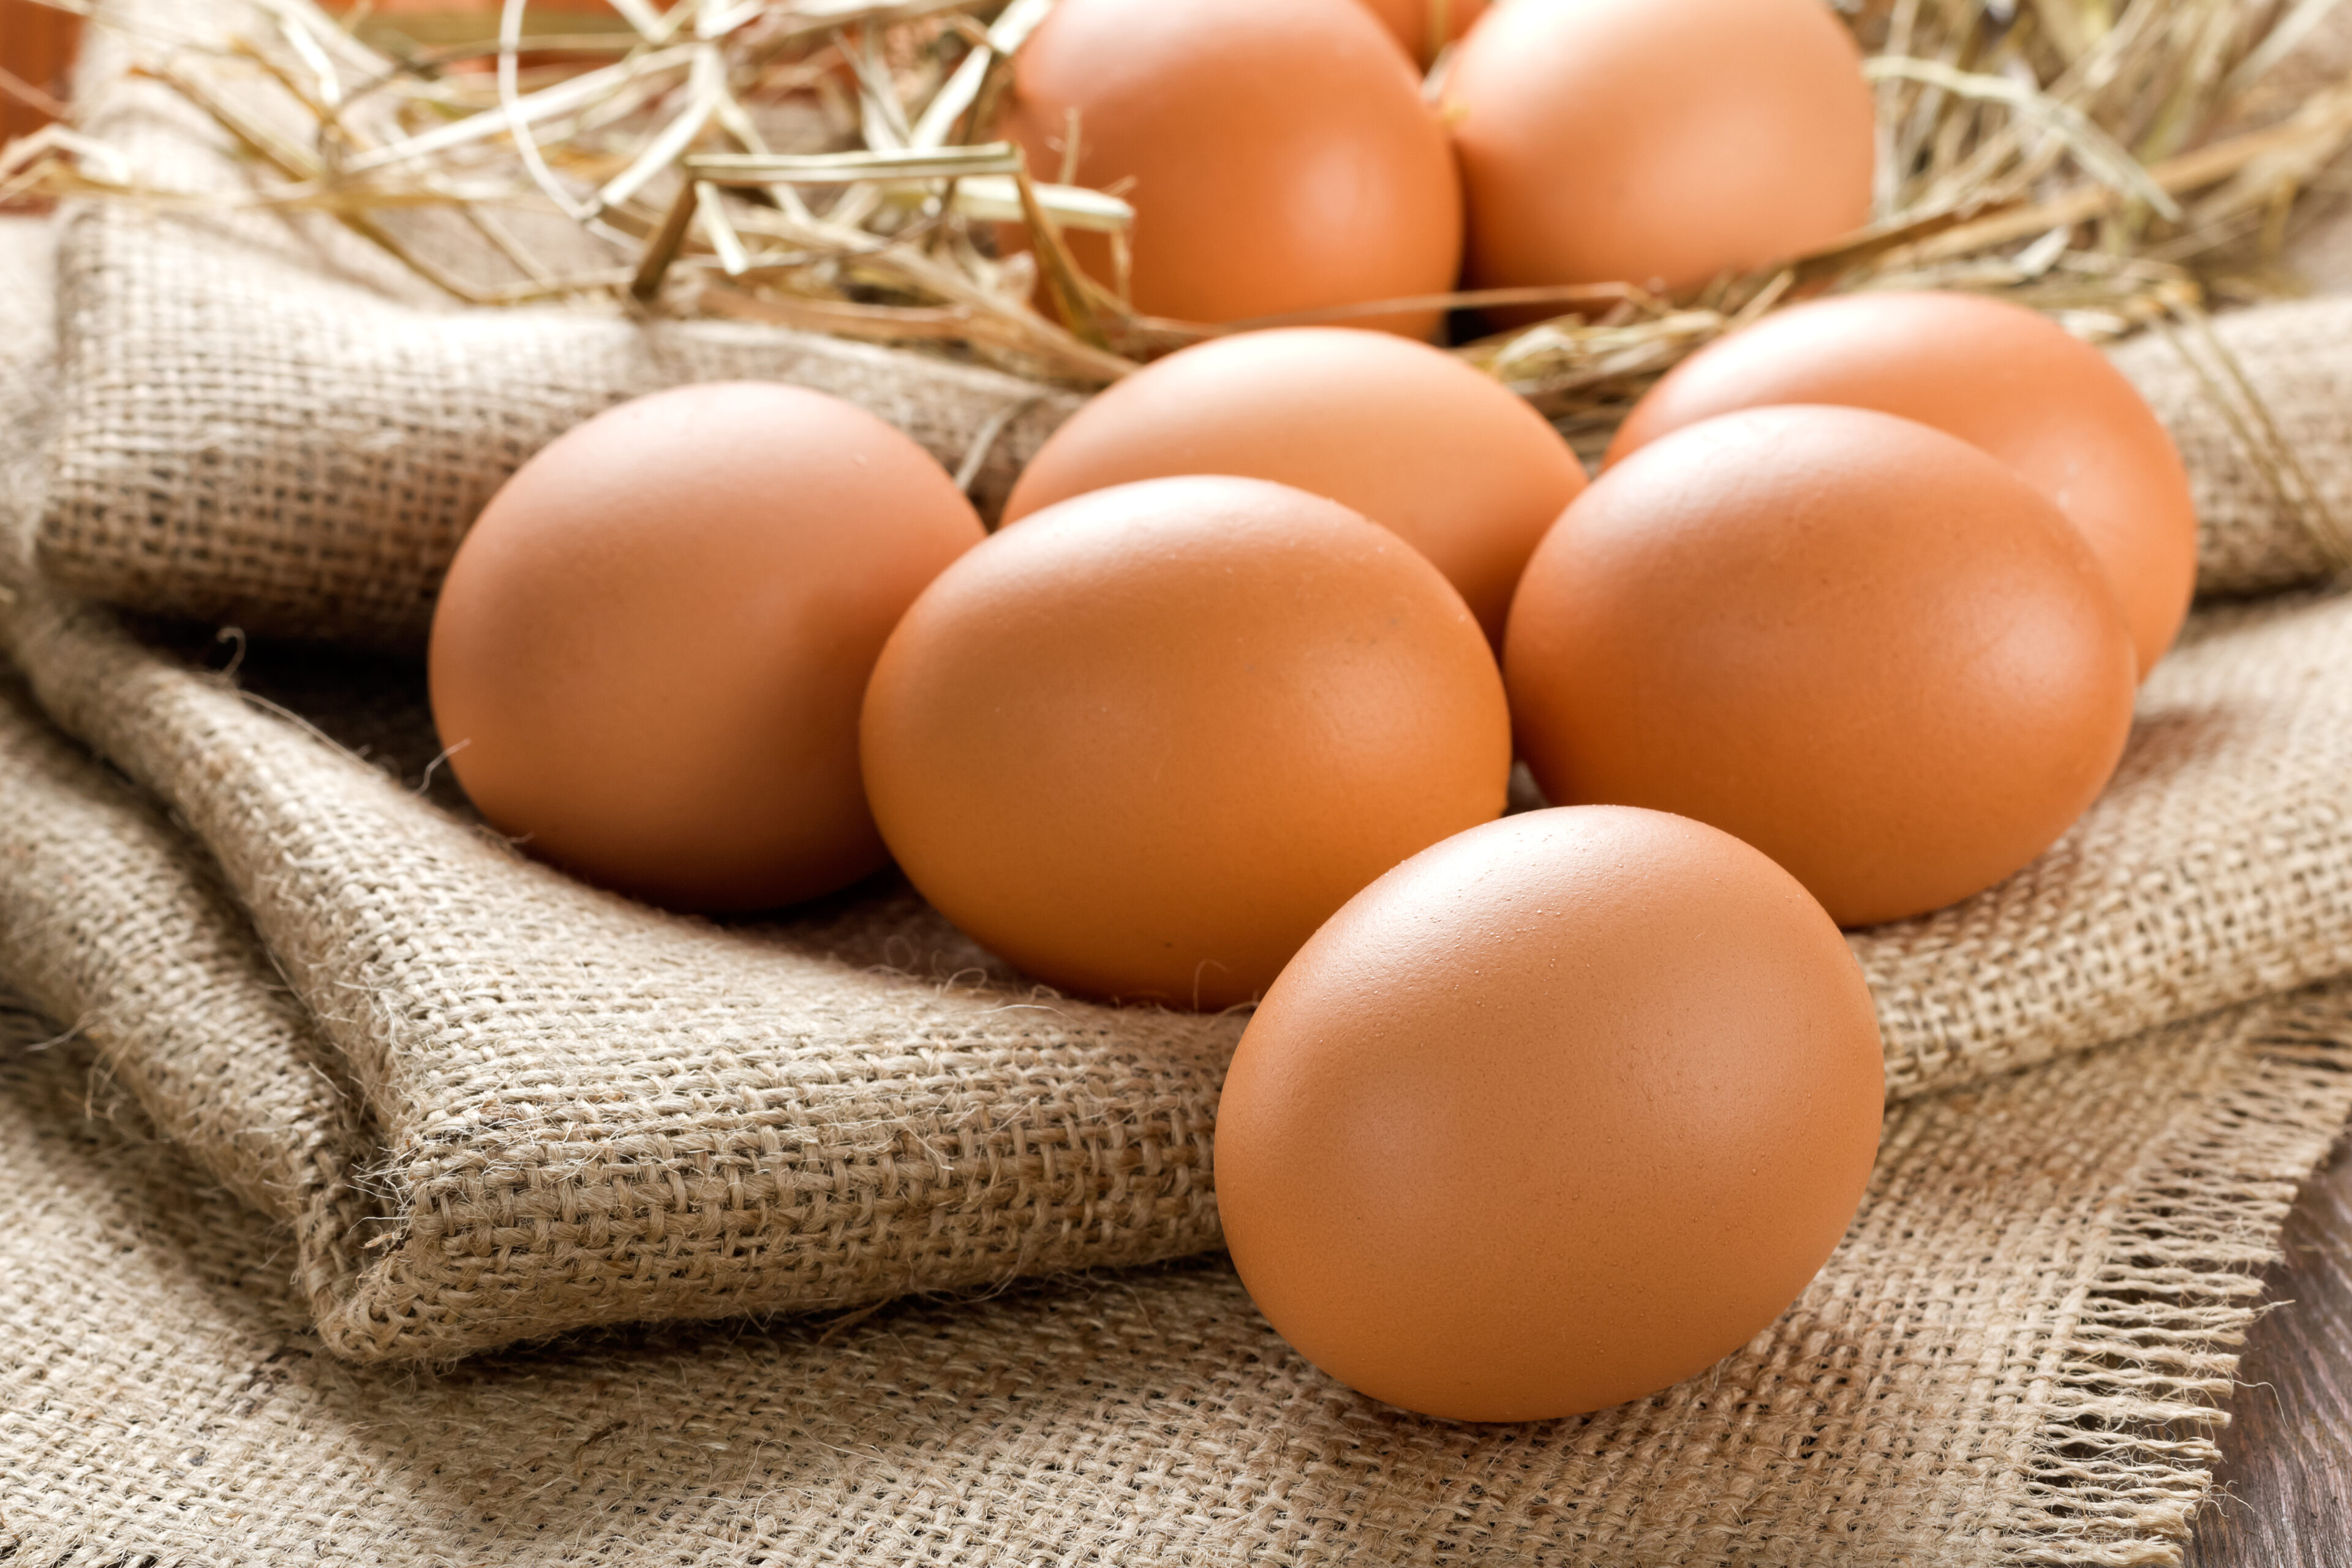 Eggs: The breakfast powerhouse